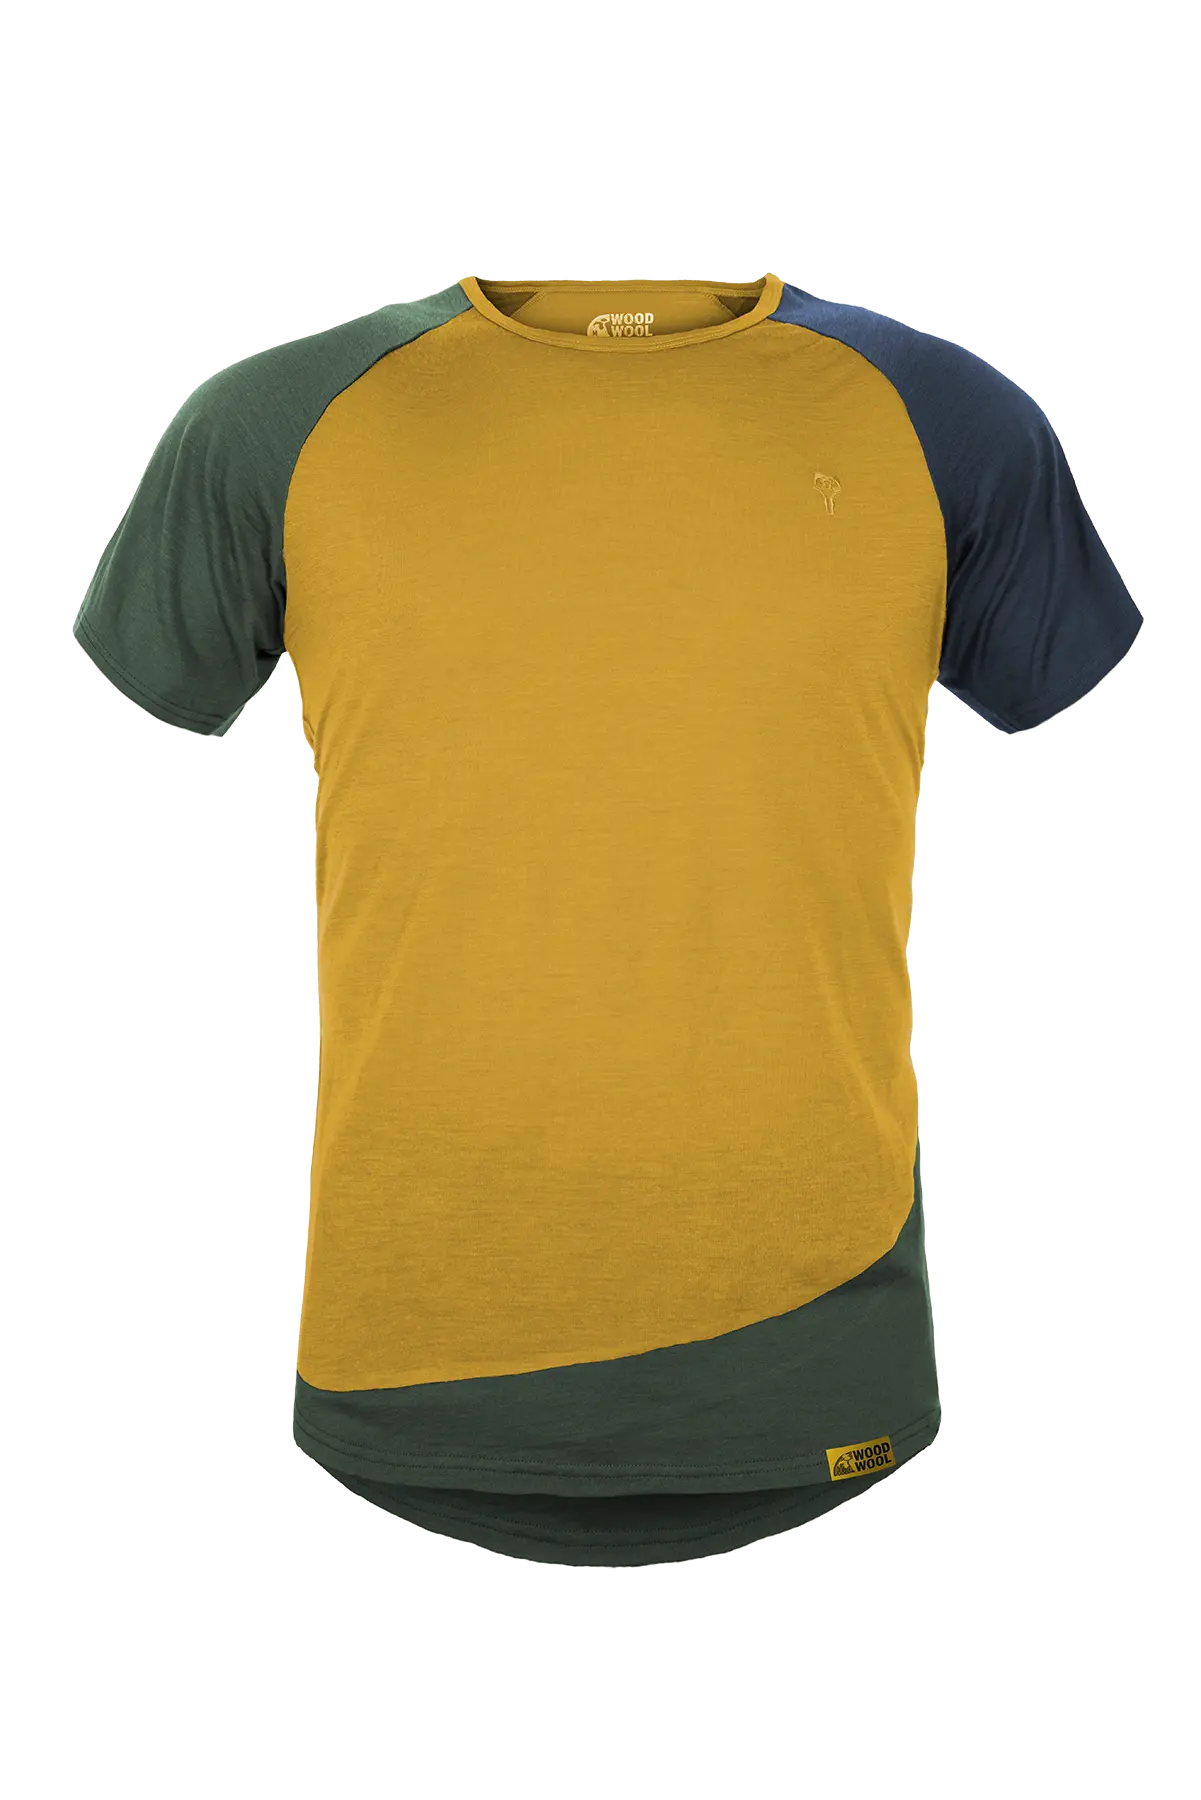 gruezi-bag-woodwool-t-shirt-mr-kirk-2700-2704-2300-2001-daizy-daze-yellow-amainfrei Kopie